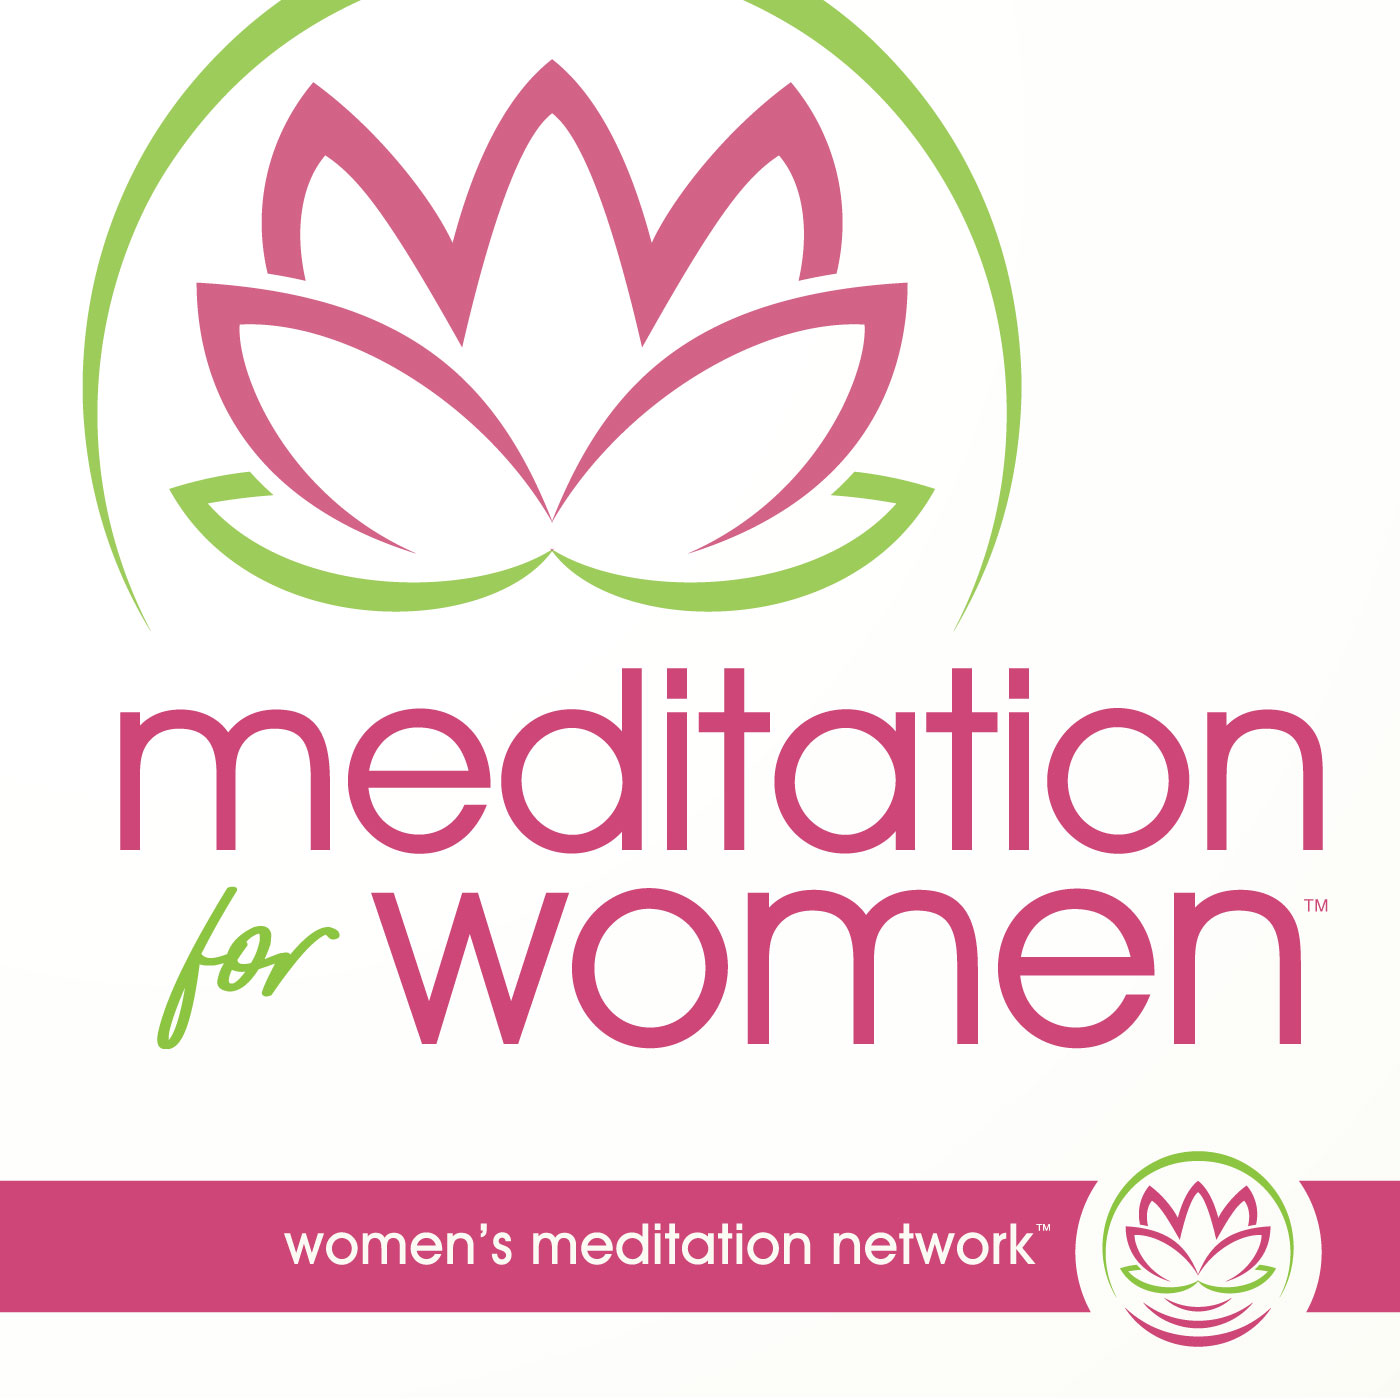 Meditation Network for Women